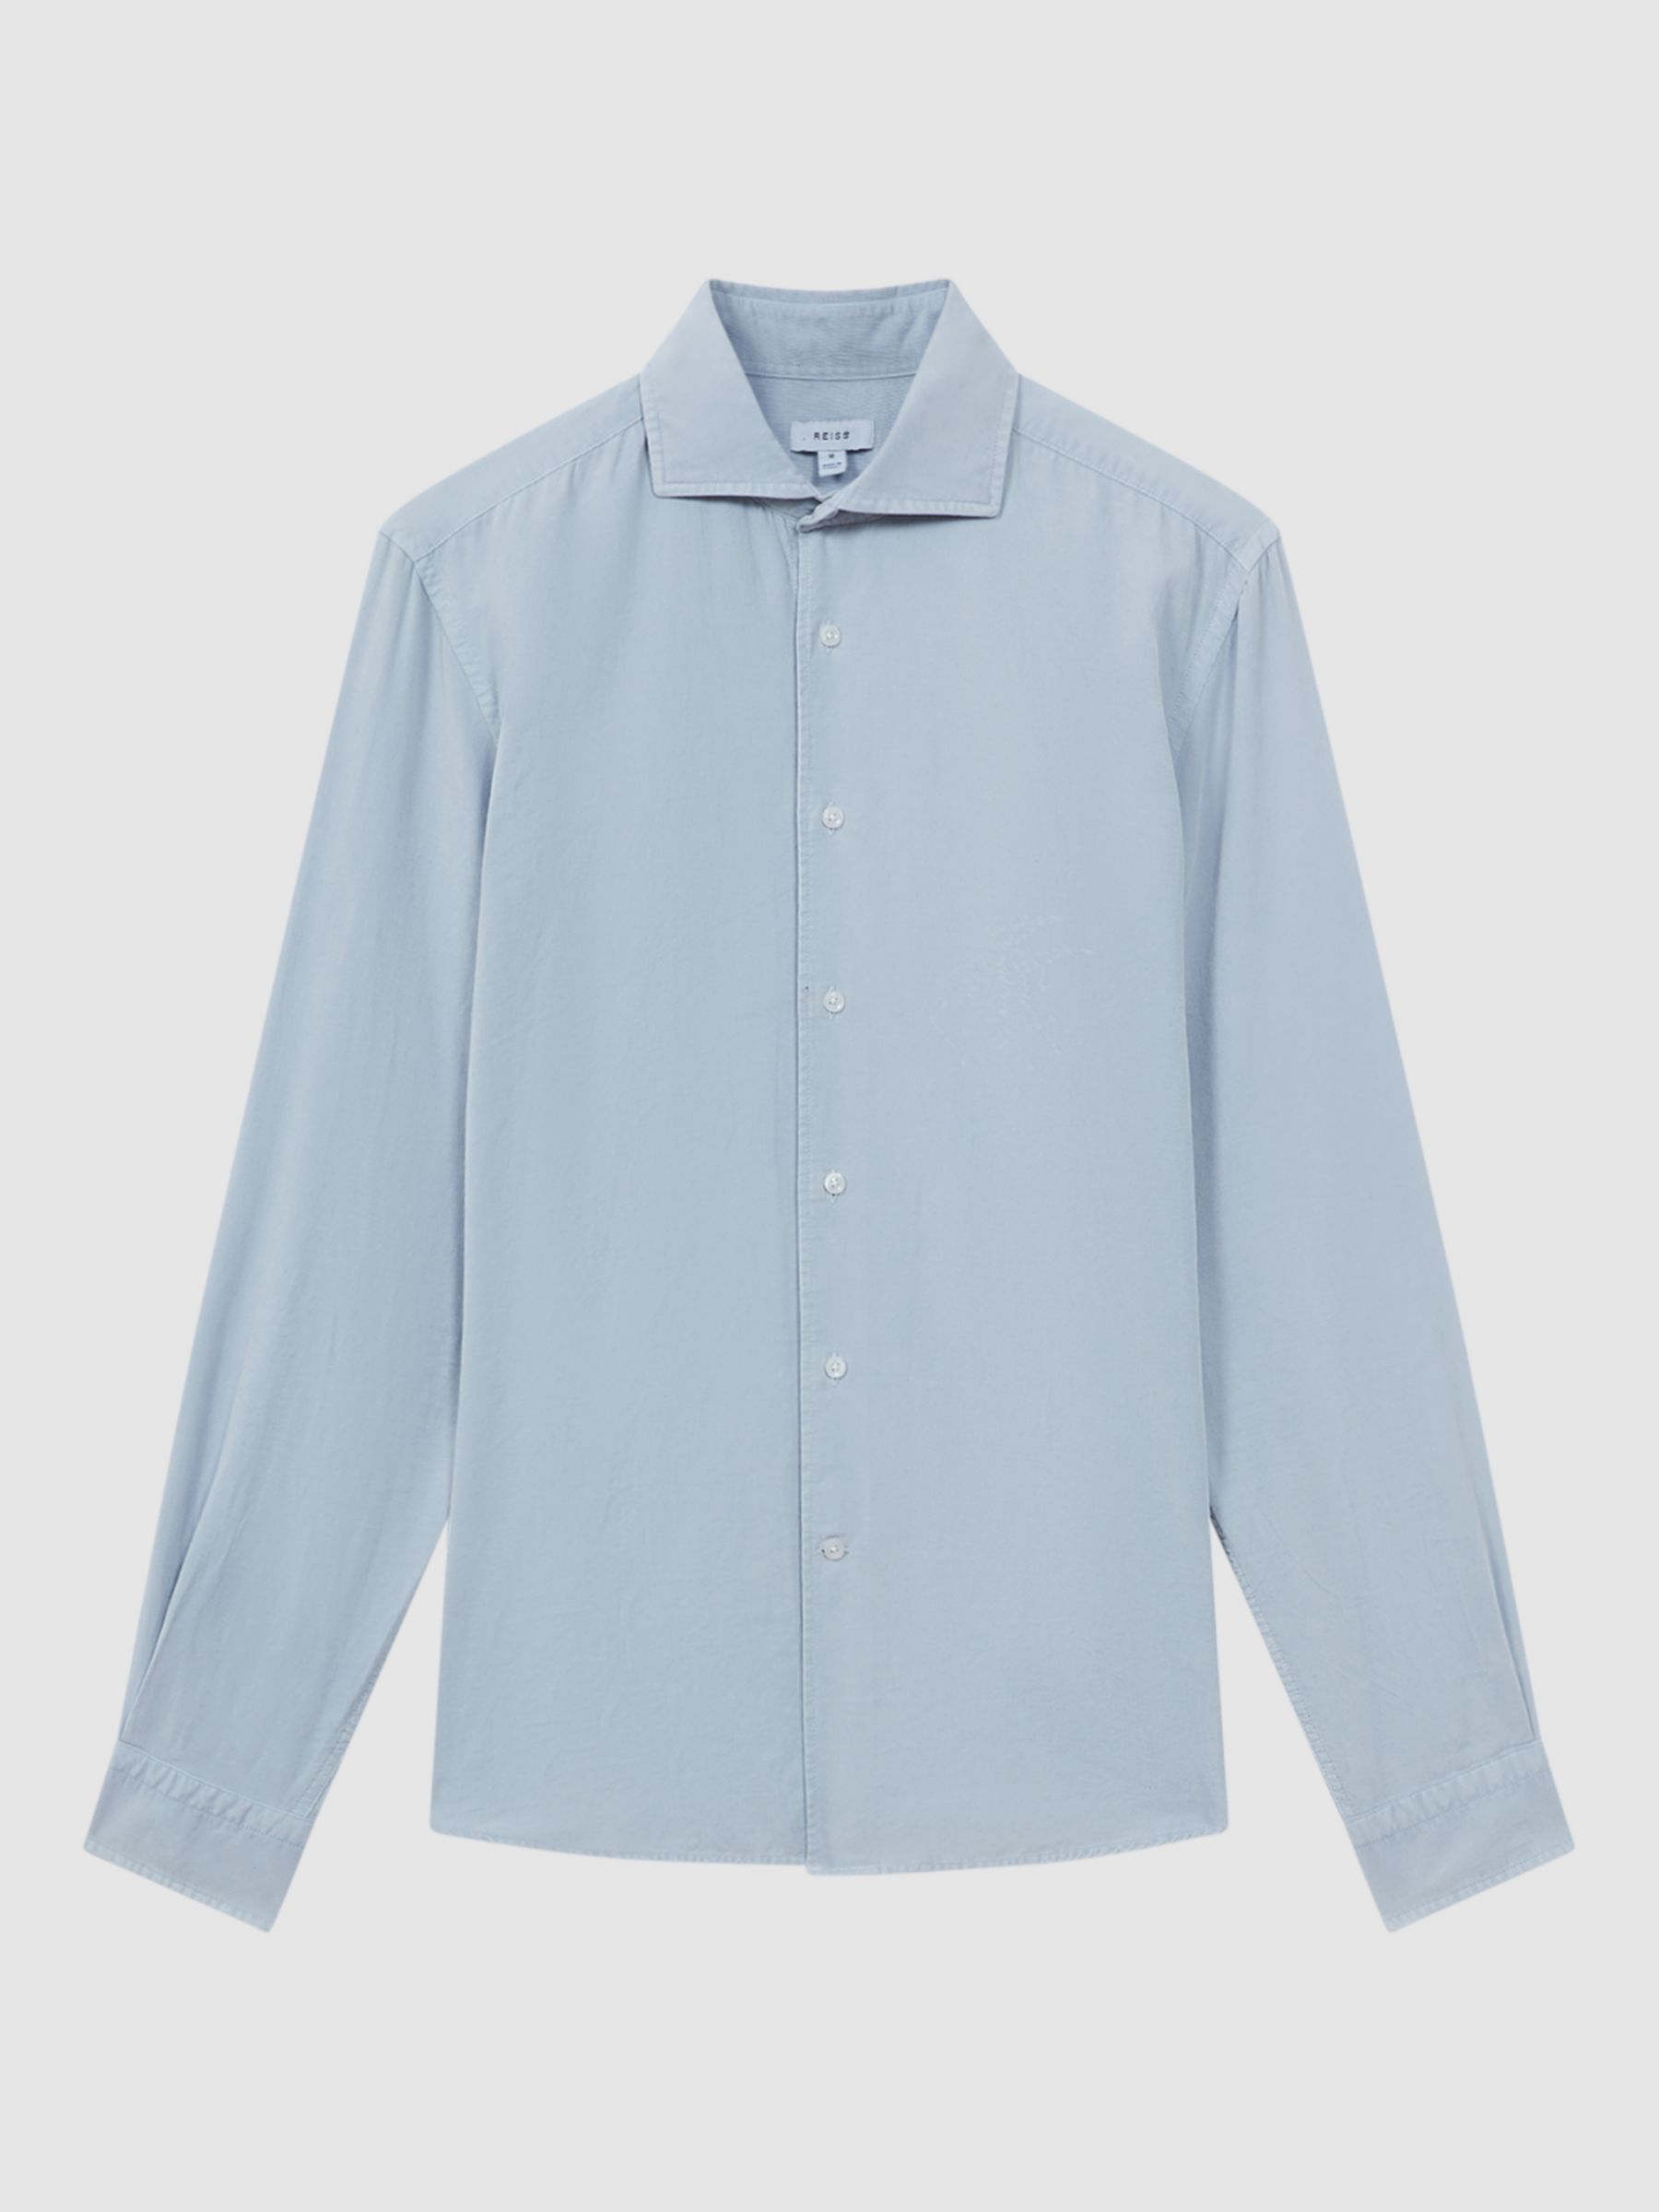 Reiss Vincy Long Sleeve Cutaway Collar Shirt, Soft Blue, XS